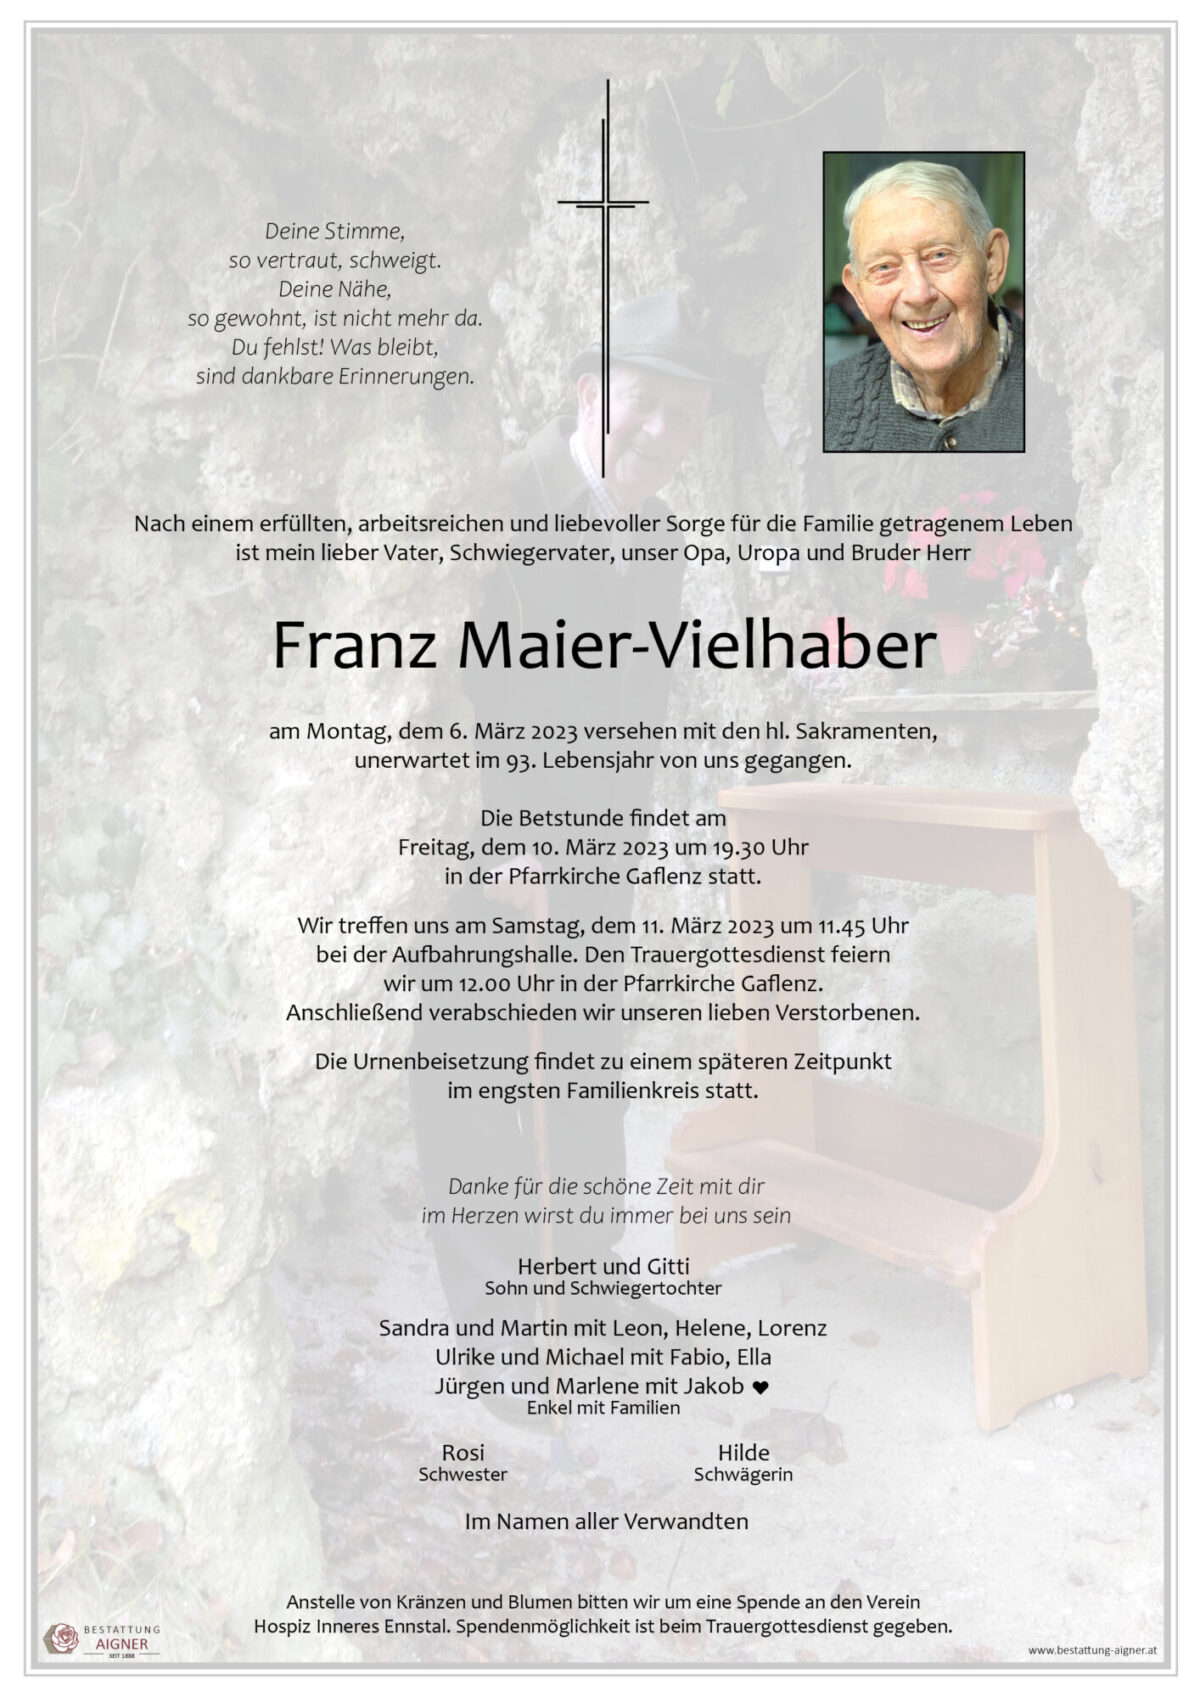 Franz Maier-Vielhaber